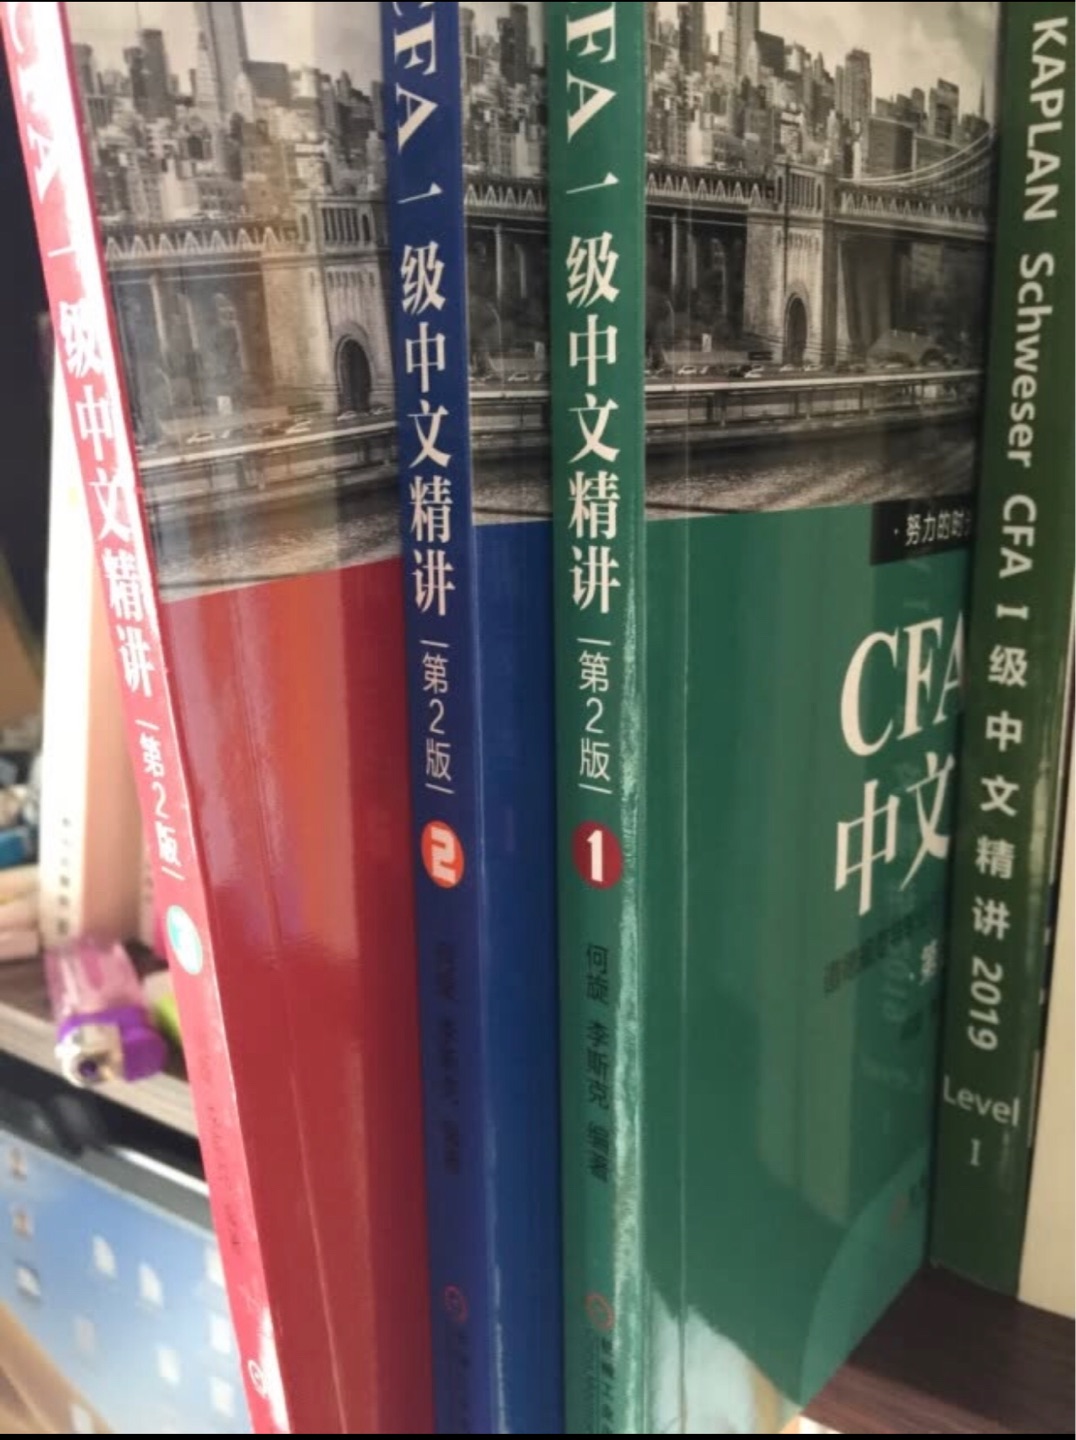 挺好的，虽然看英文的更直观好理解一点，但是电子书版本看起来真的很累，看中文节省一点时间吧就算